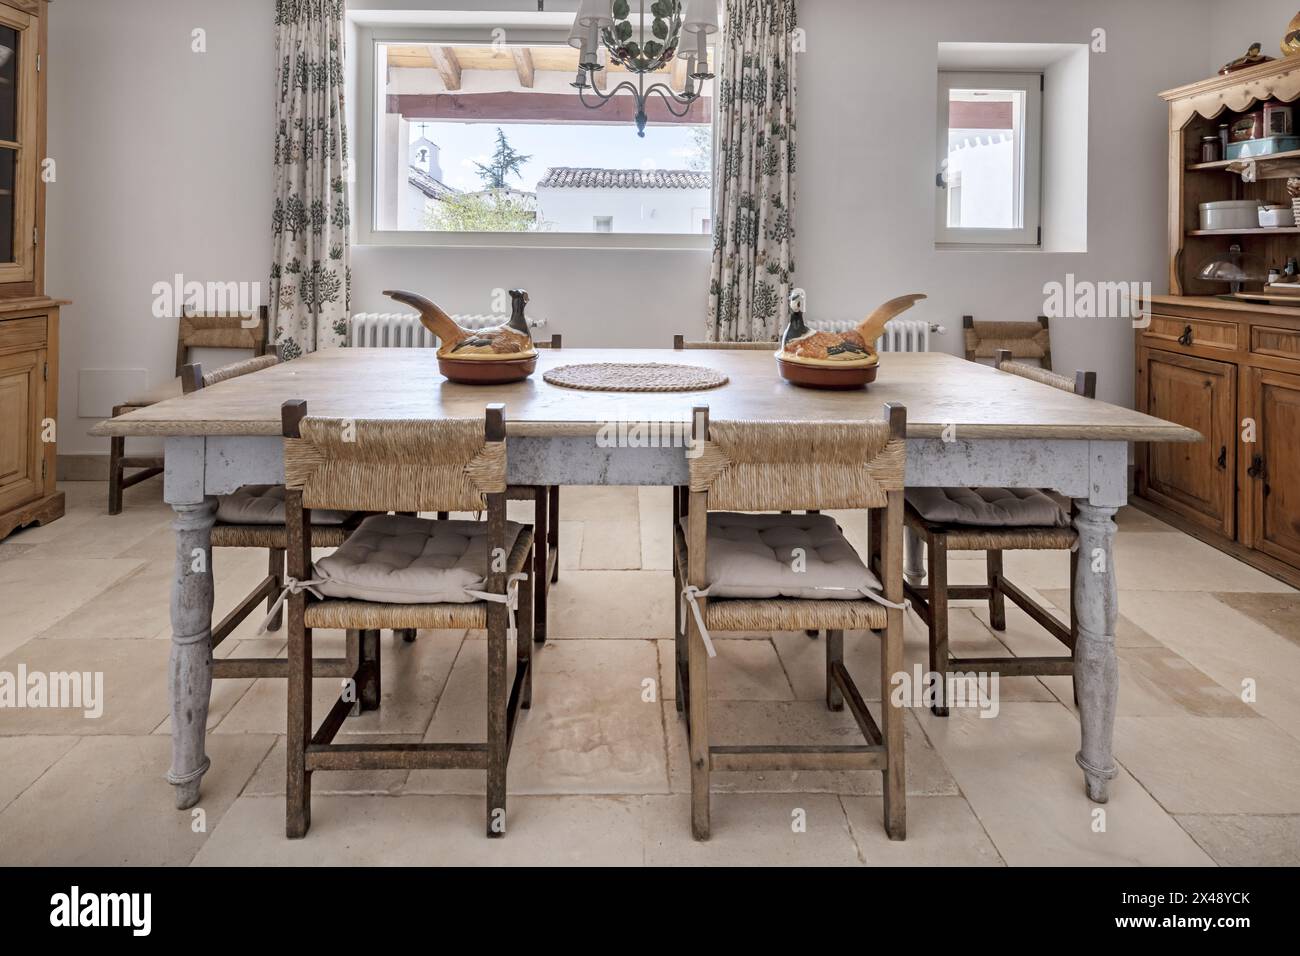 Una sala da pranzo in una casa di campagna con pavimenti in marmo e splendidi mobili in legno in stile rustico Foto Stock